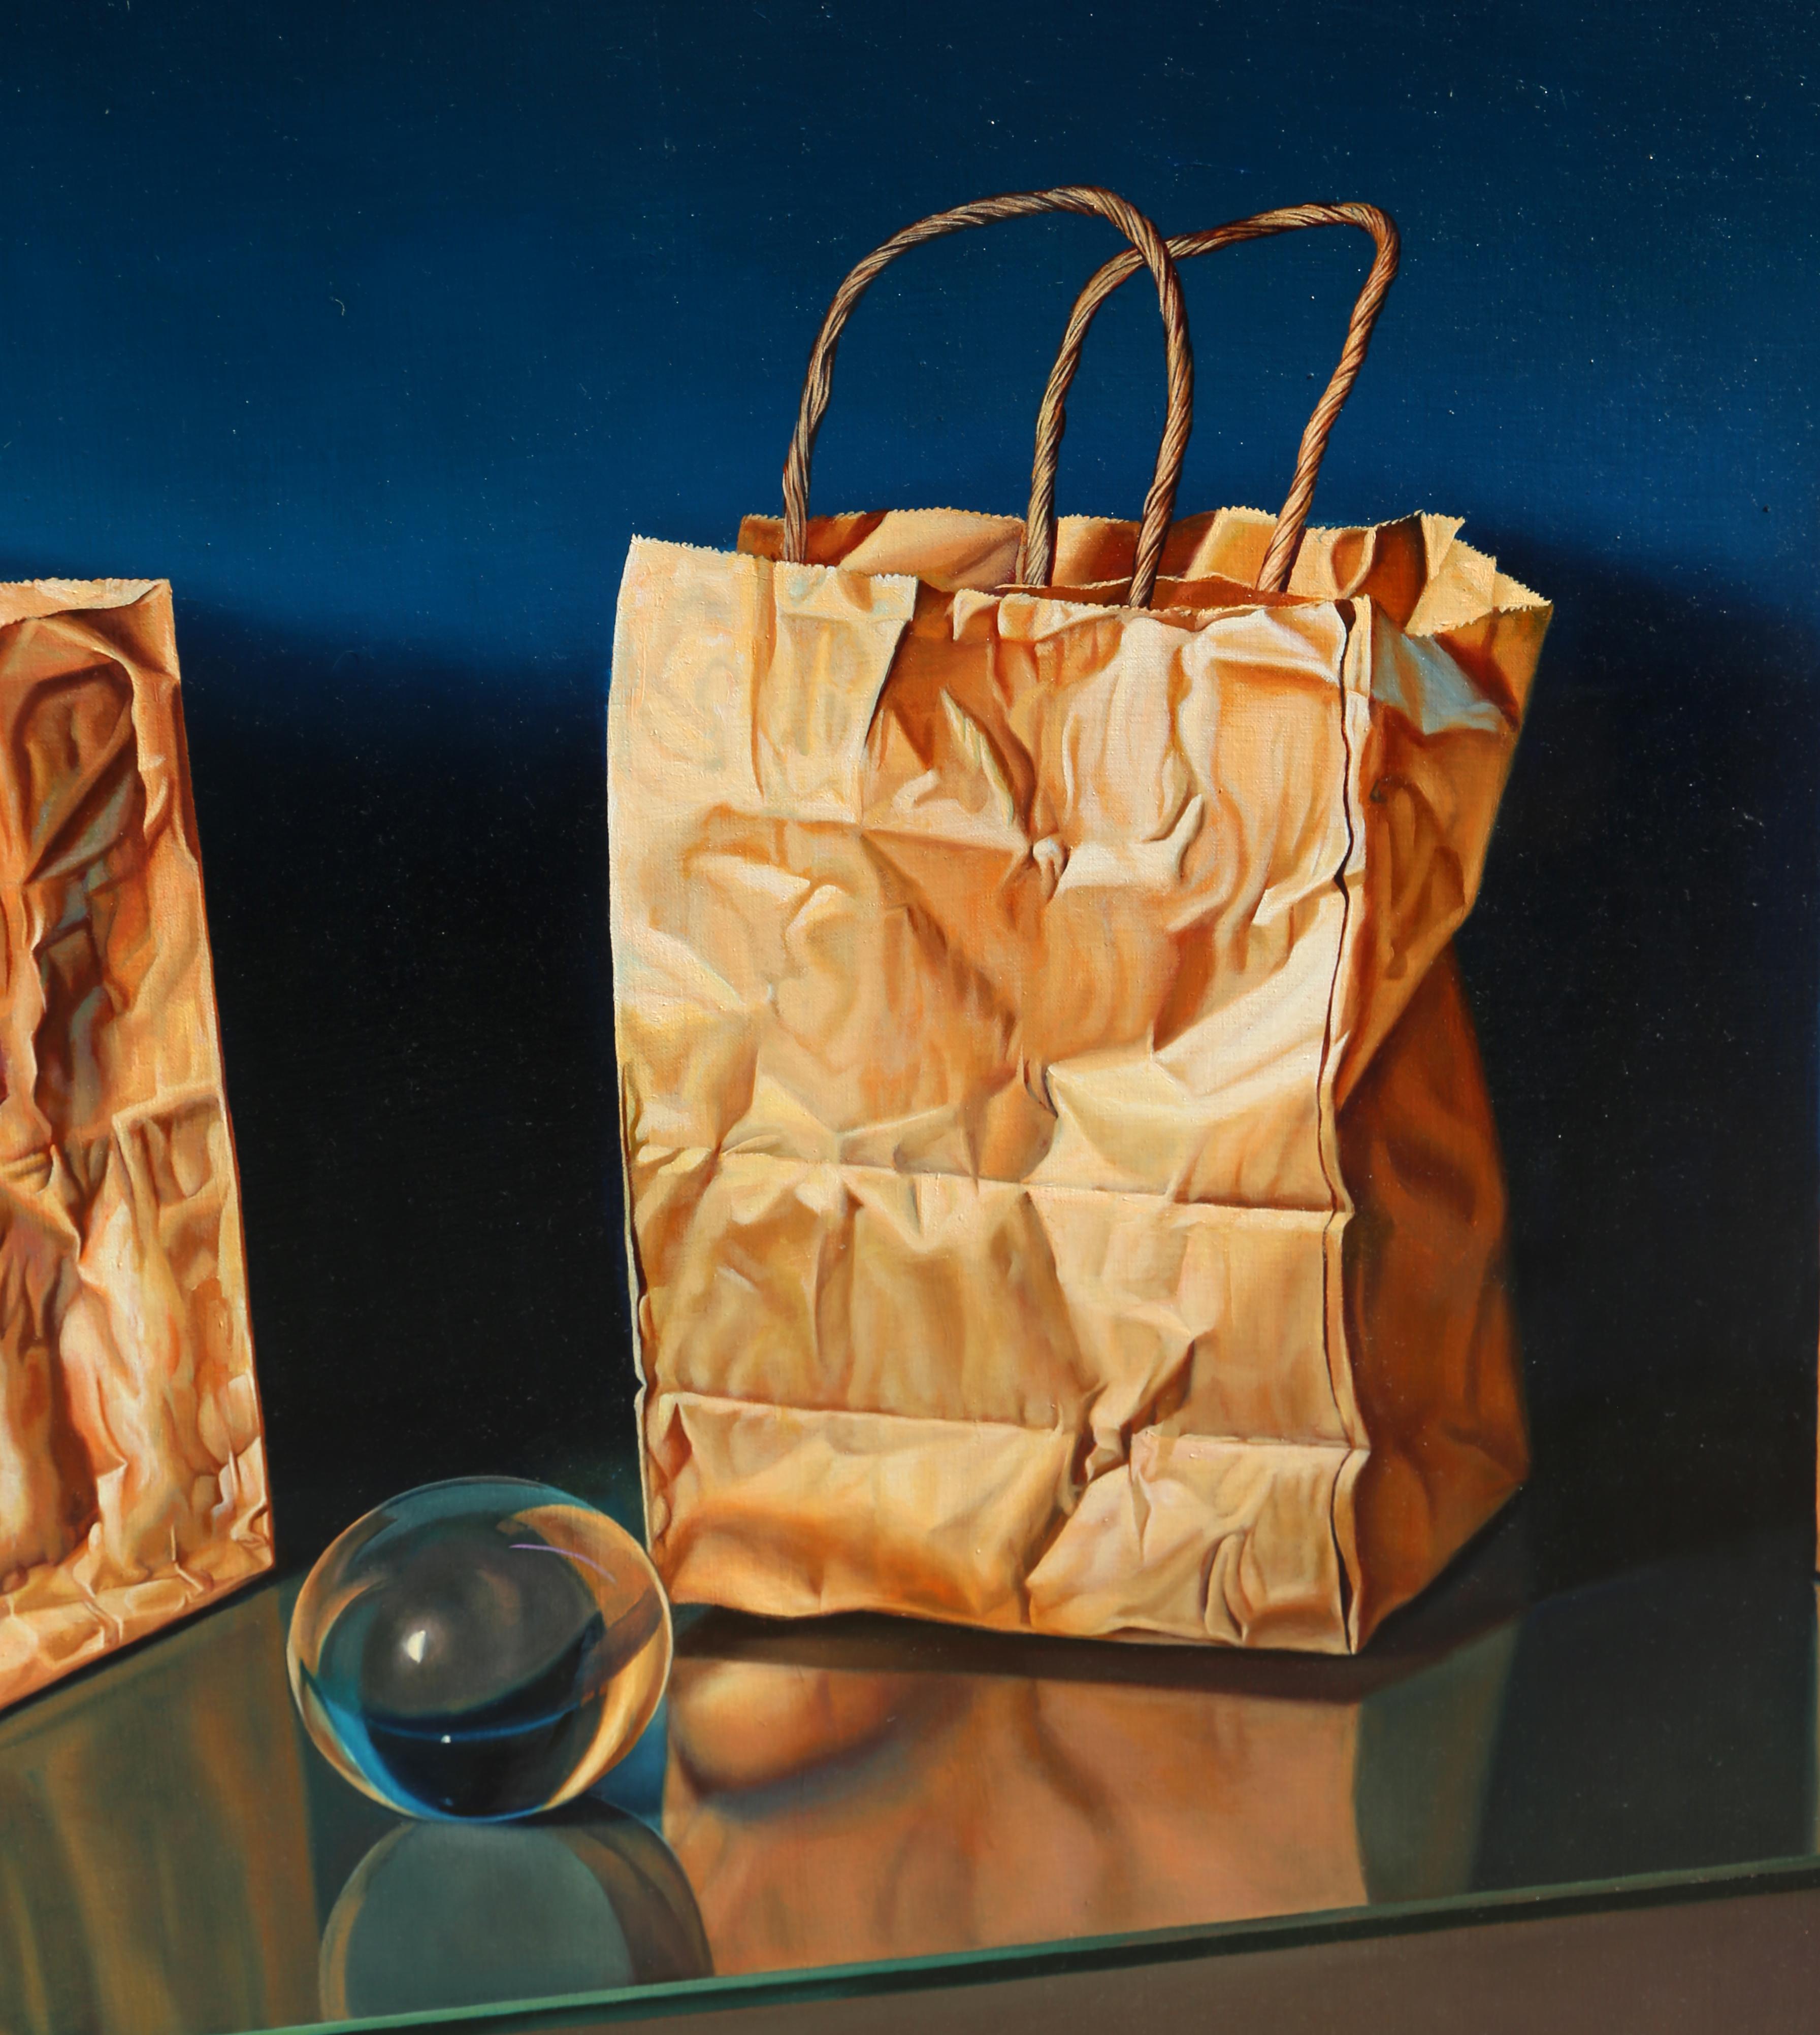 Tres Bolsas y Esfera de cristal - Painting by Gustavo Schmidt